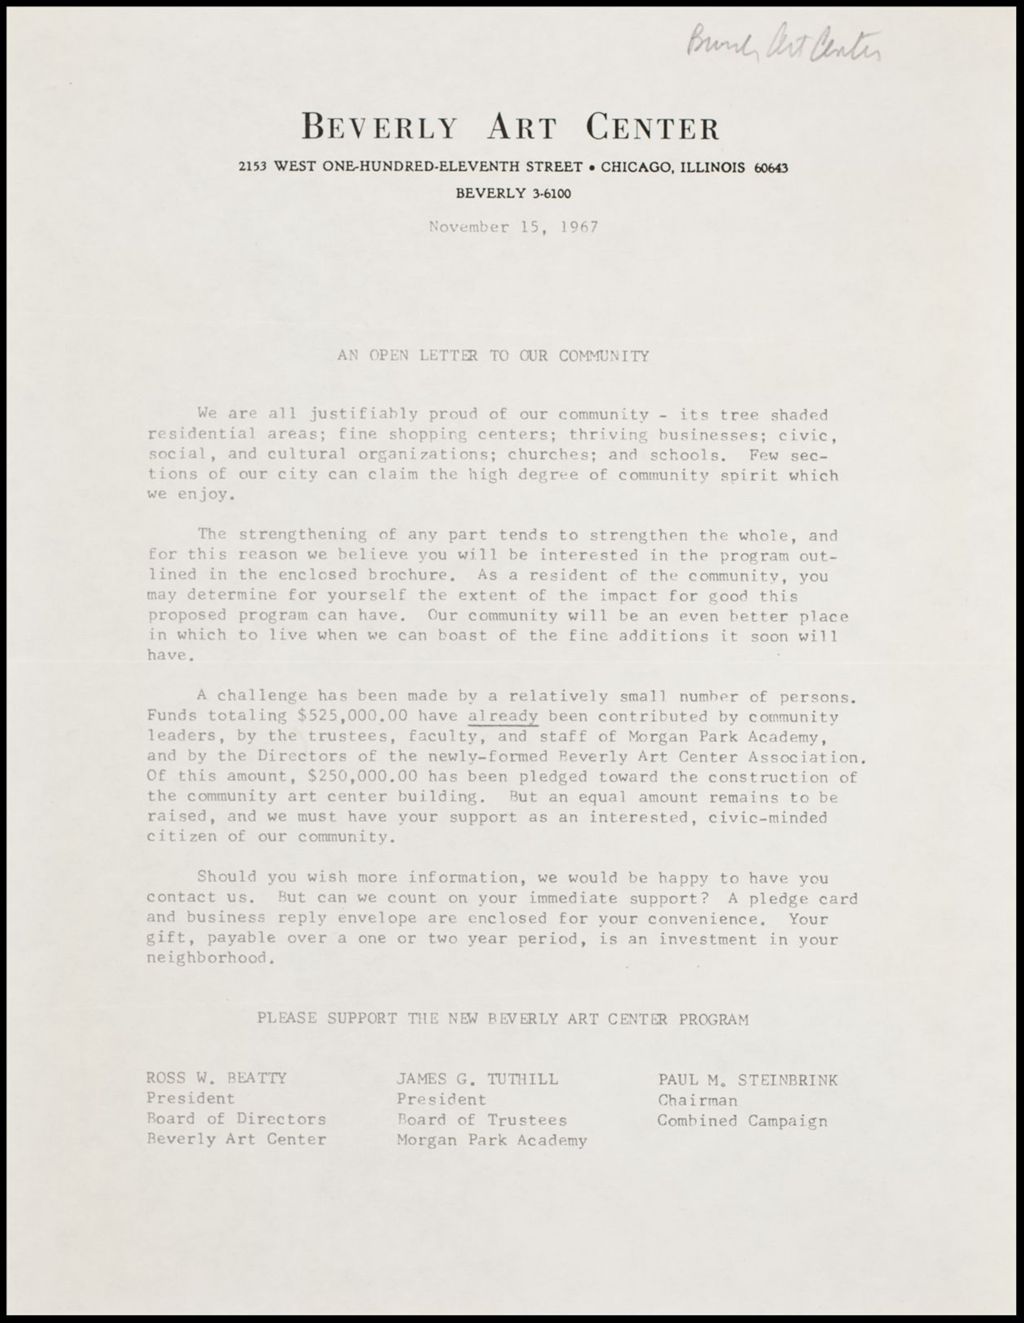 Miniature of Beverly Art Center, 1967-1969 (Folder 6)